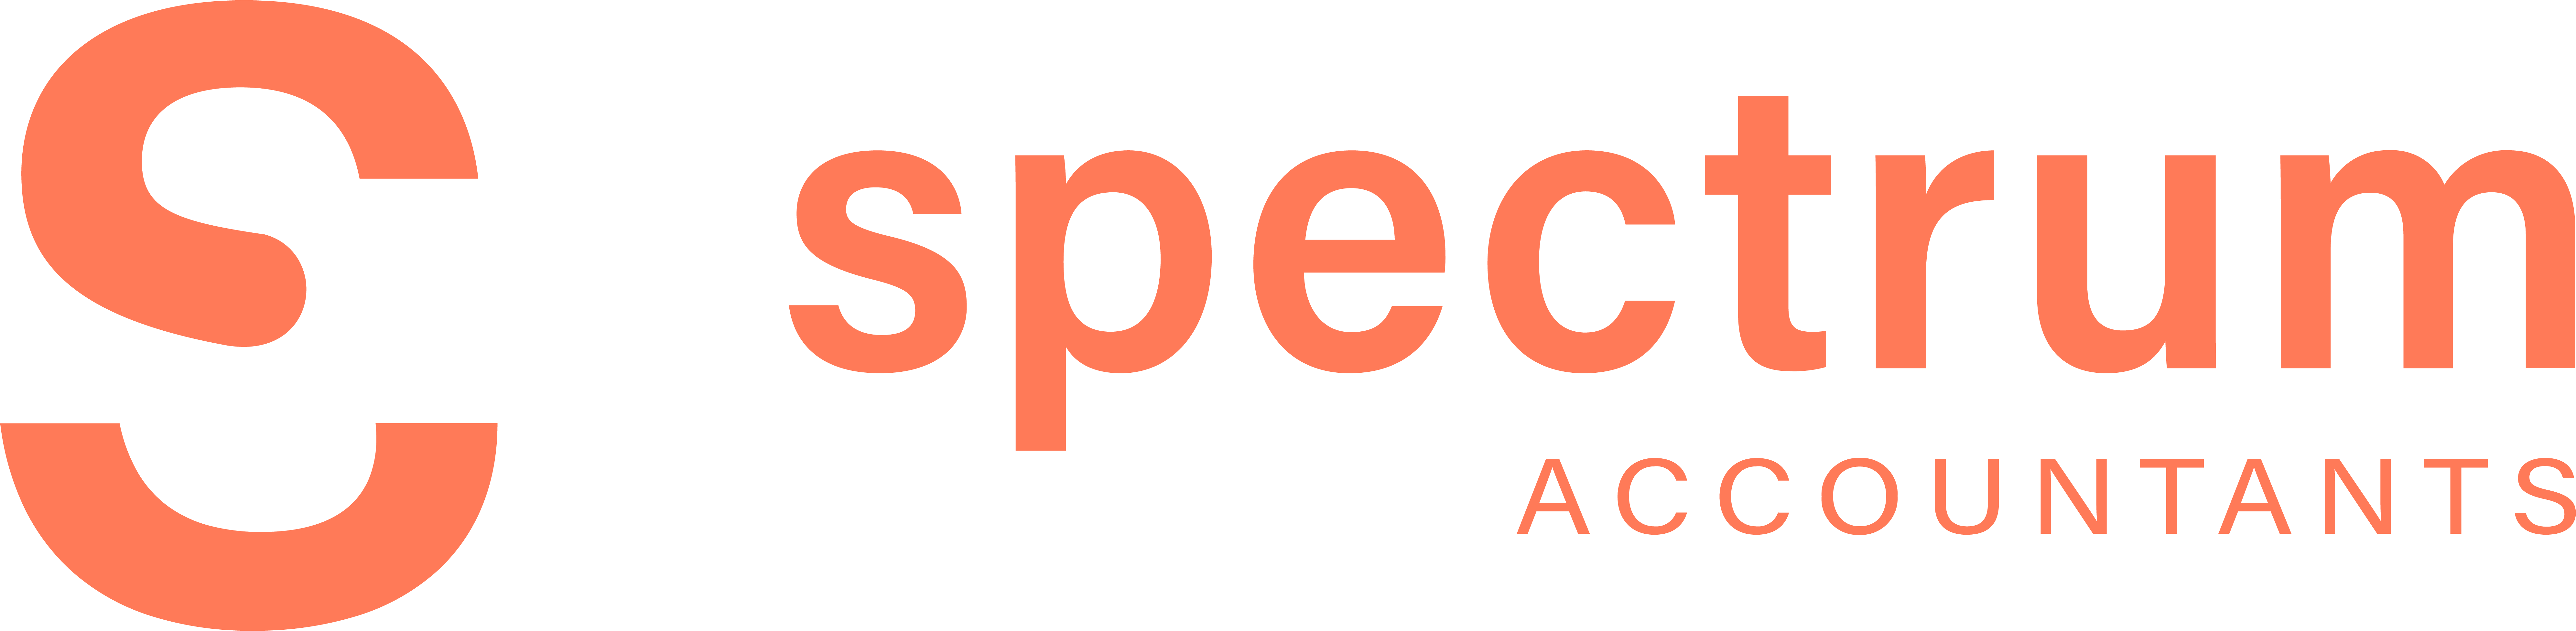 Spectrum accountants logo